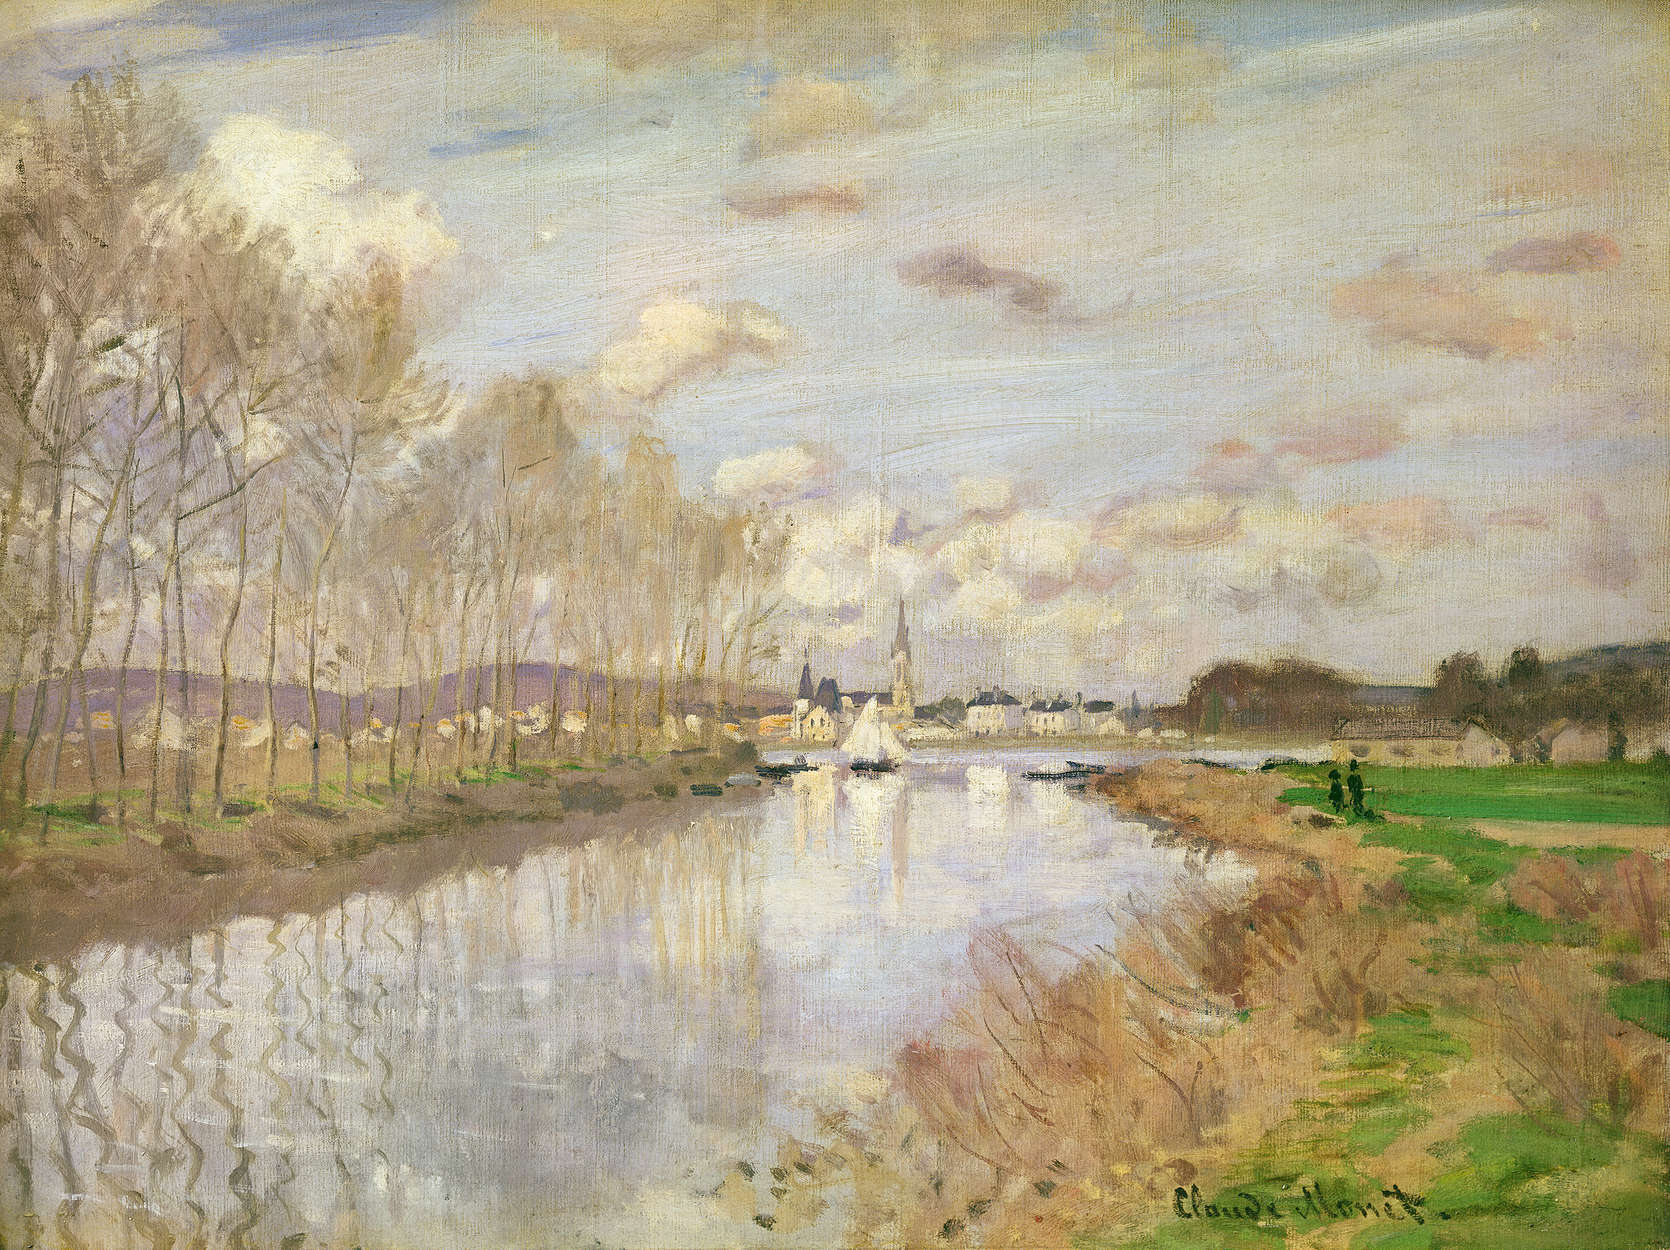             Het jacht bij Argenteuil" muurschildering van Claude Monet
        